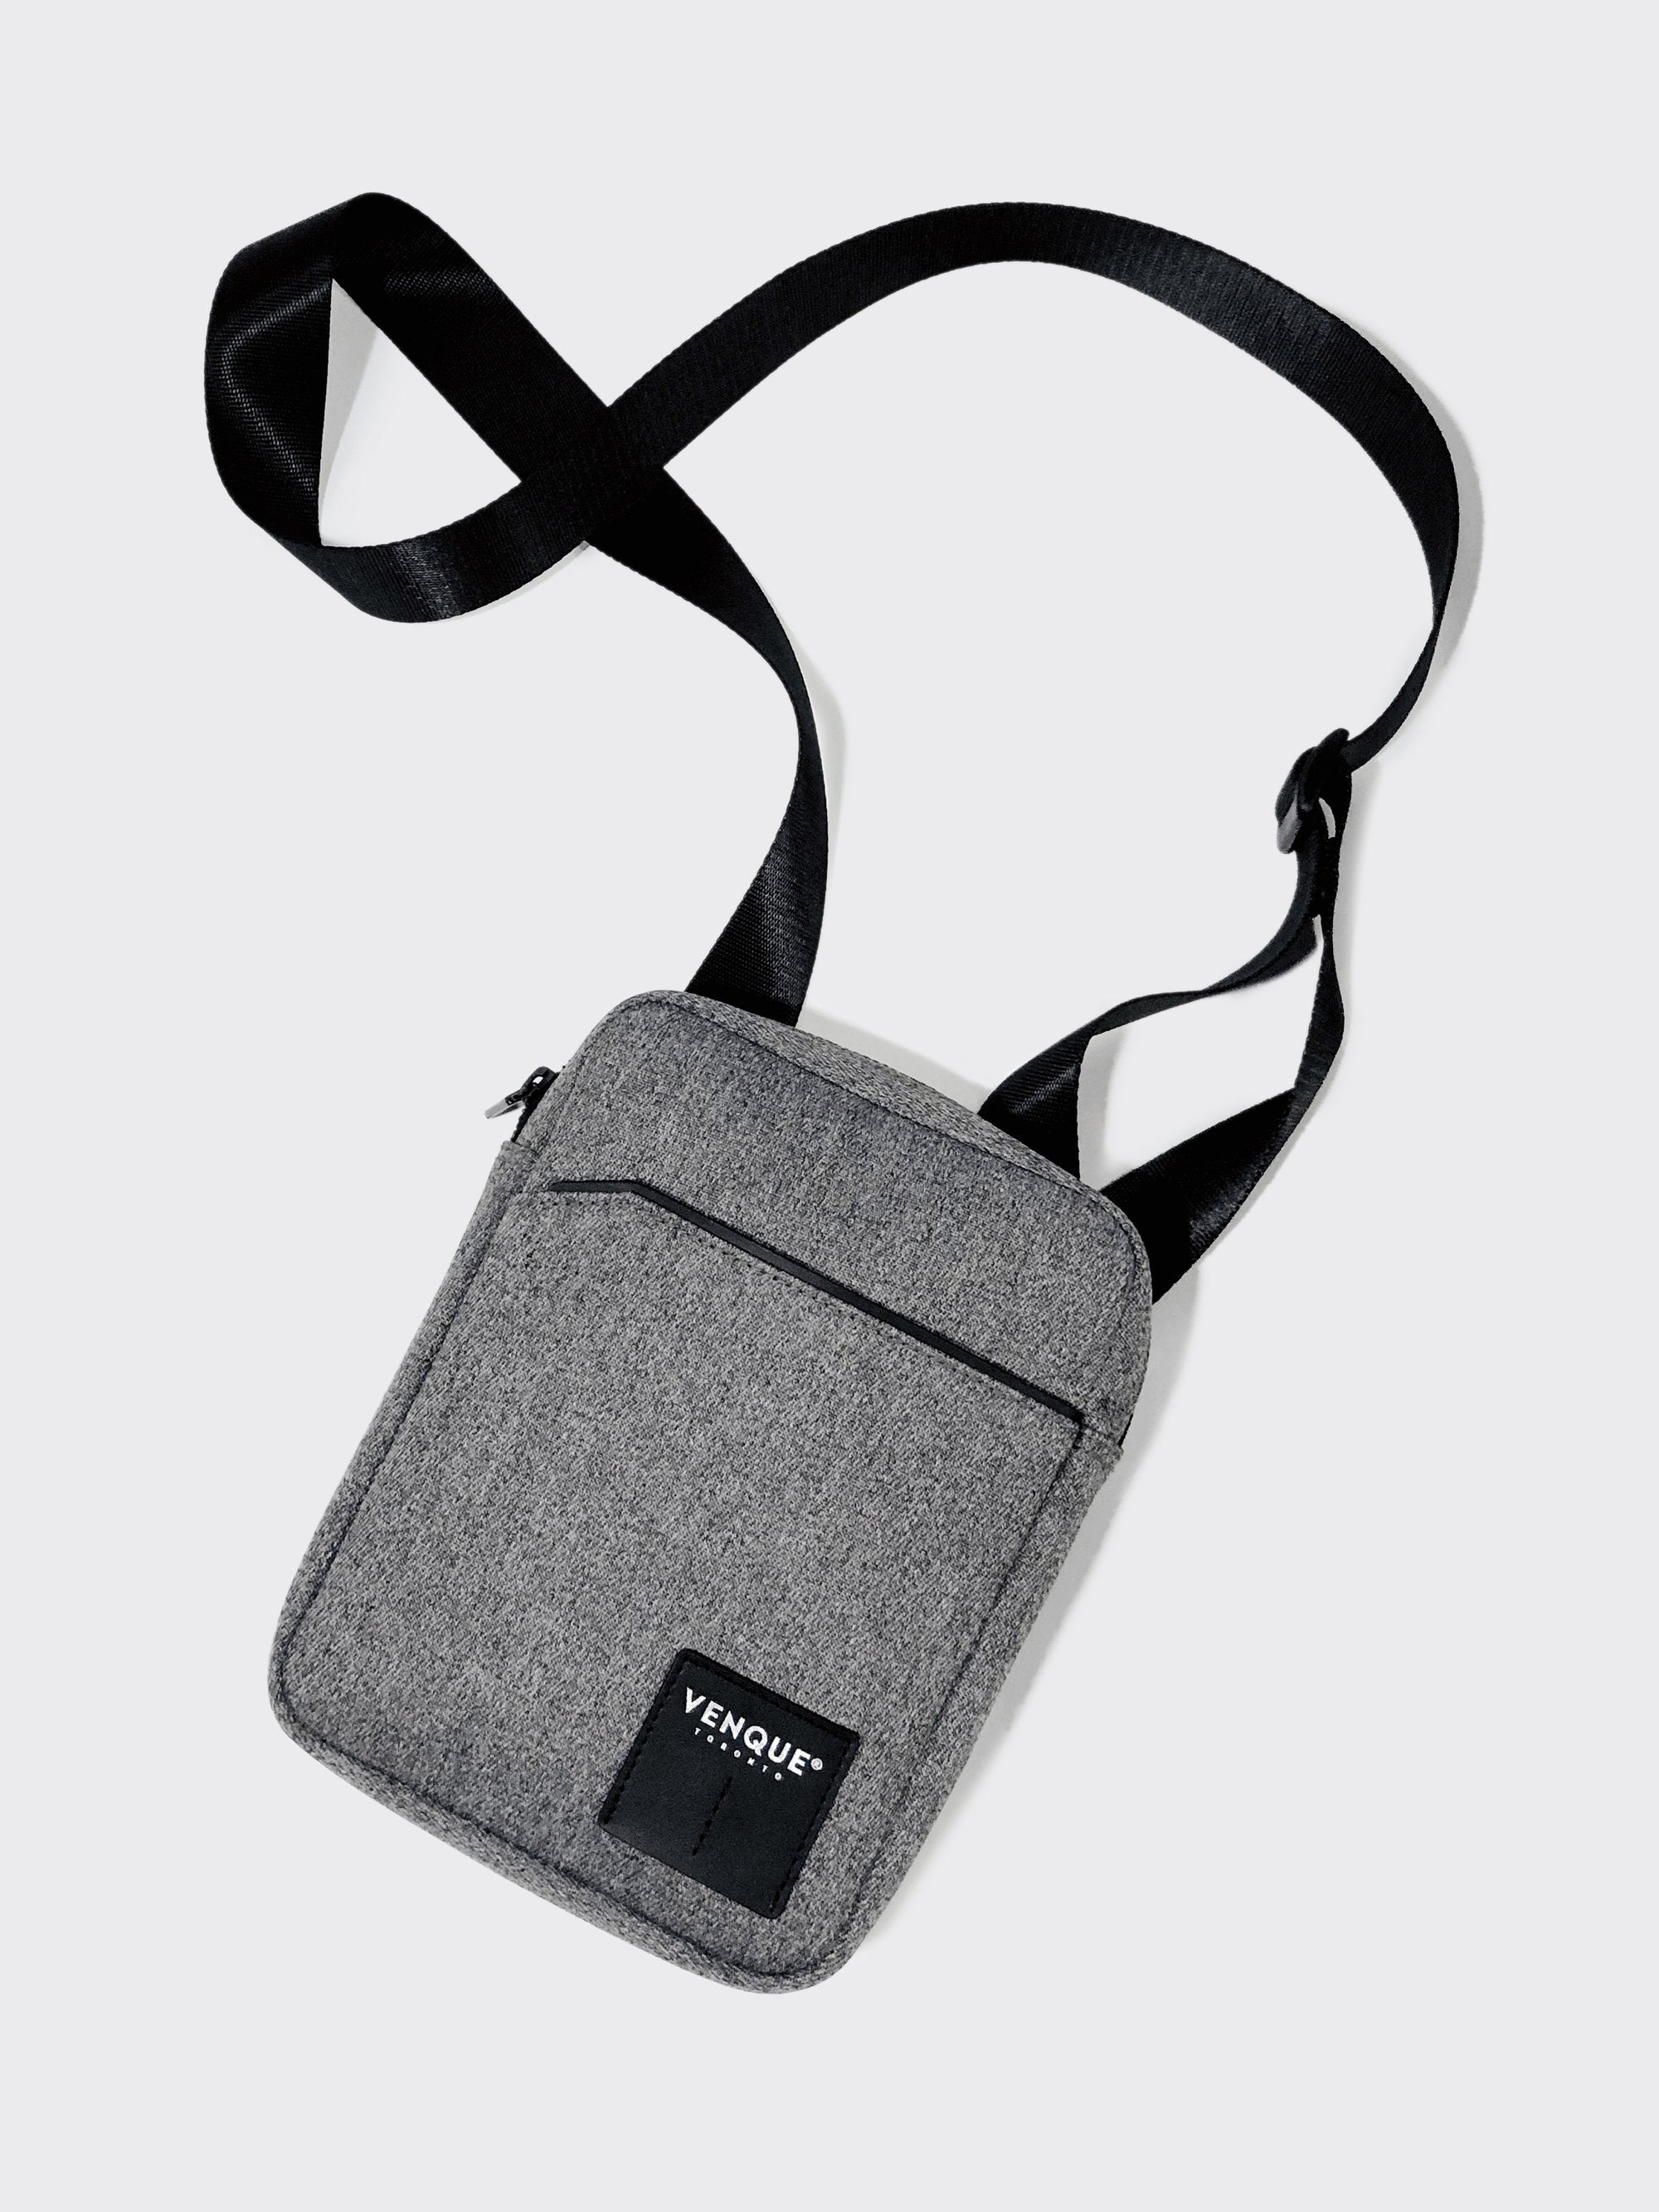 Venque cosmo sling grey unisex shoulder bag